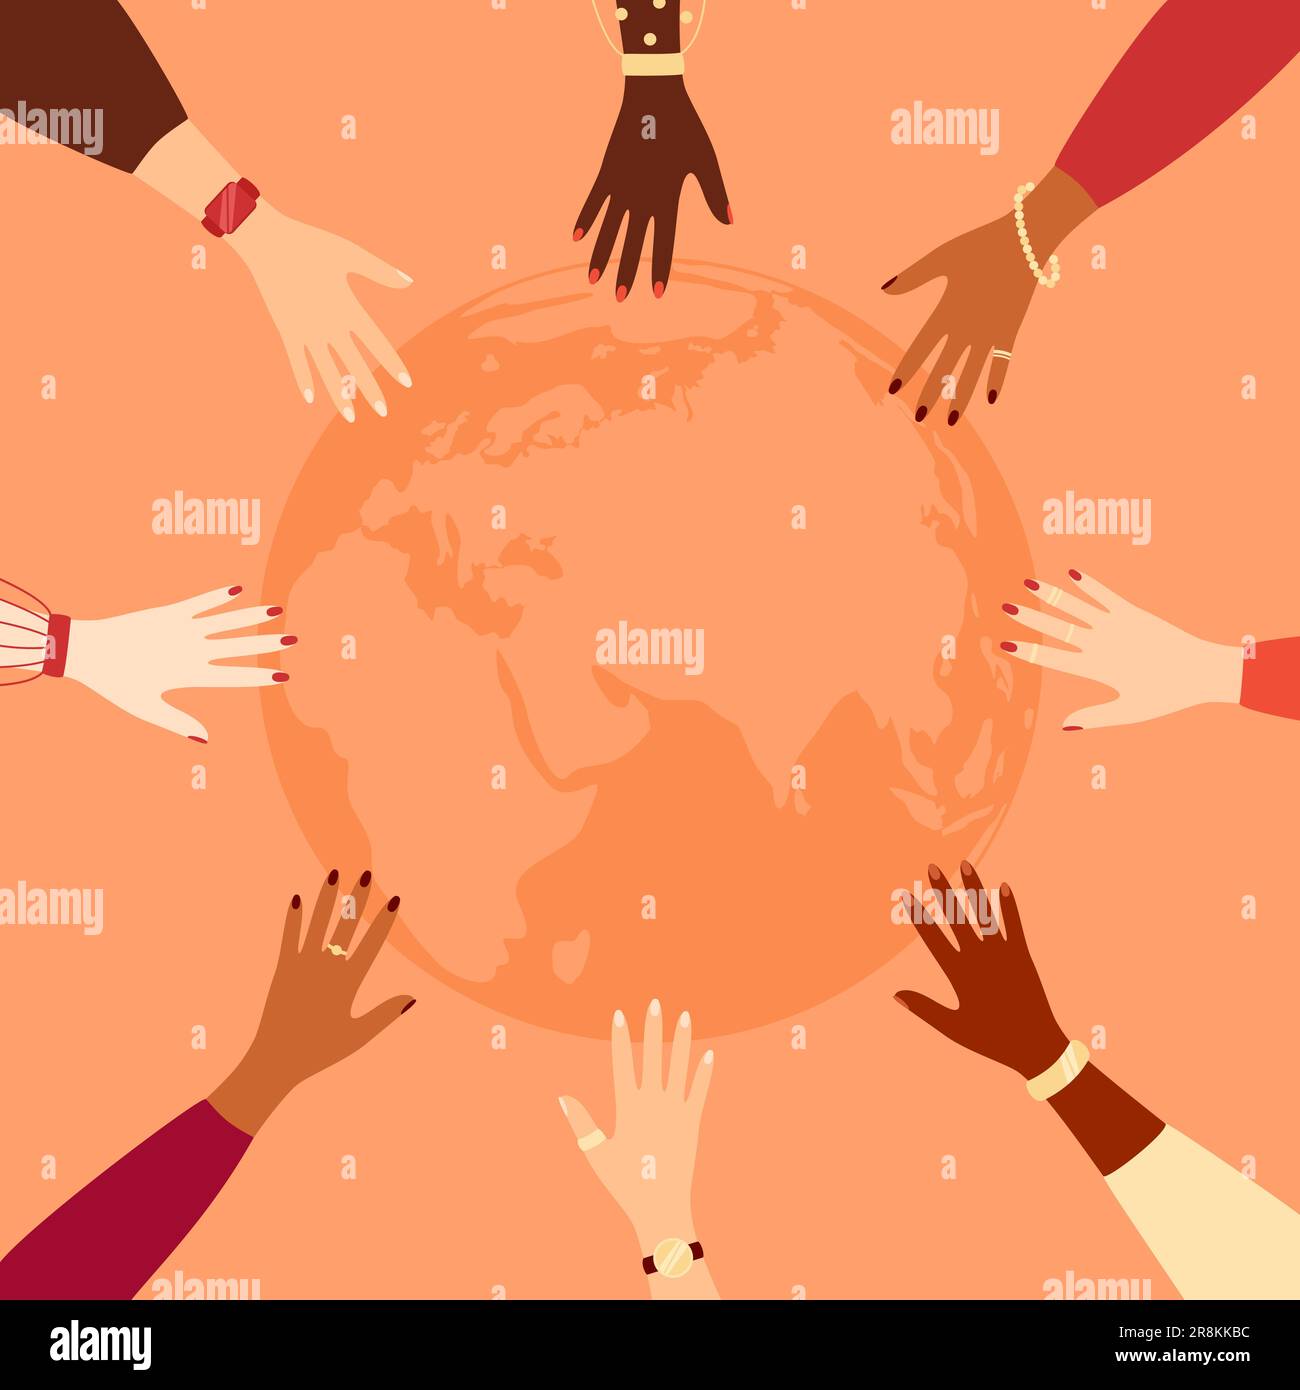 Le mani allungate di donne di diverse etnie fanno un cerchio con il globo della Terra dentro. Illustrazione vettoriale in stile piatto Illustrazione Vettoriale